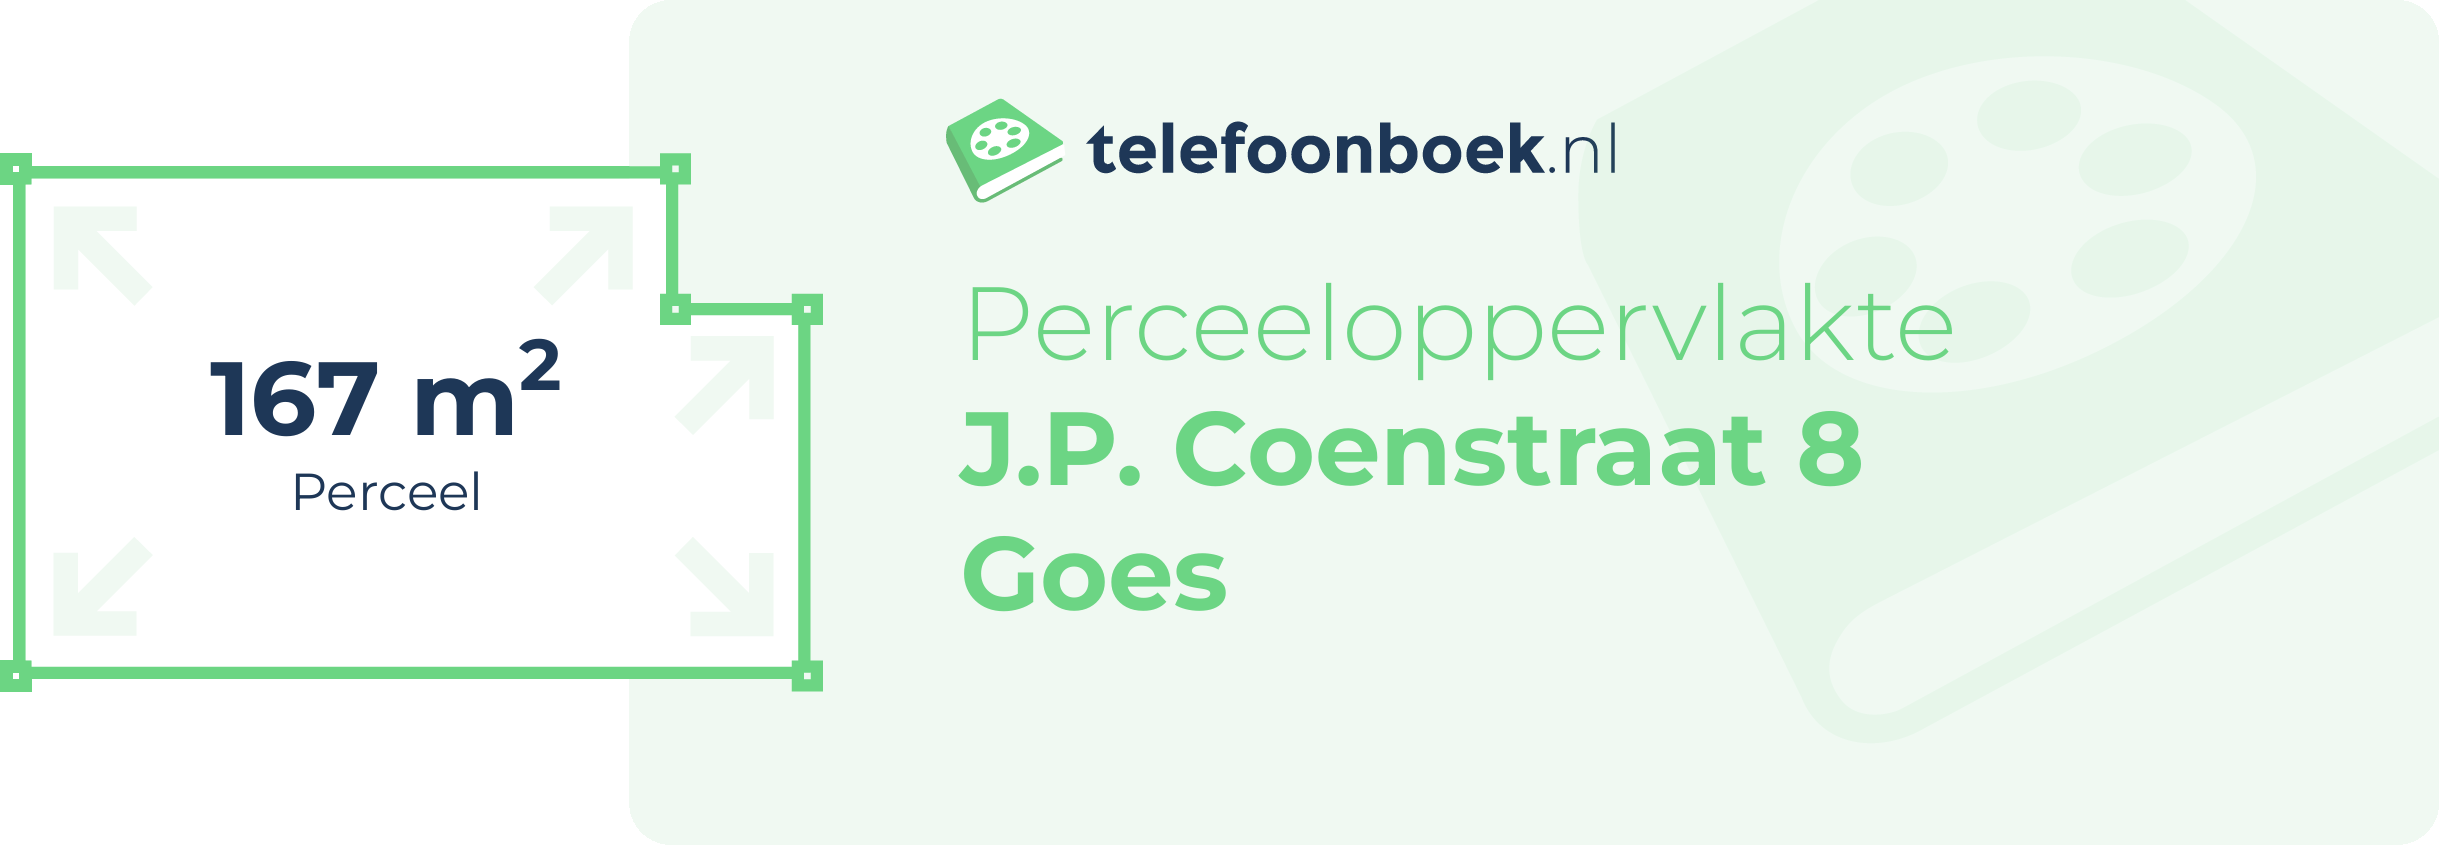 Perceeloppervlakte J.P. Coenstraat 8 Goes